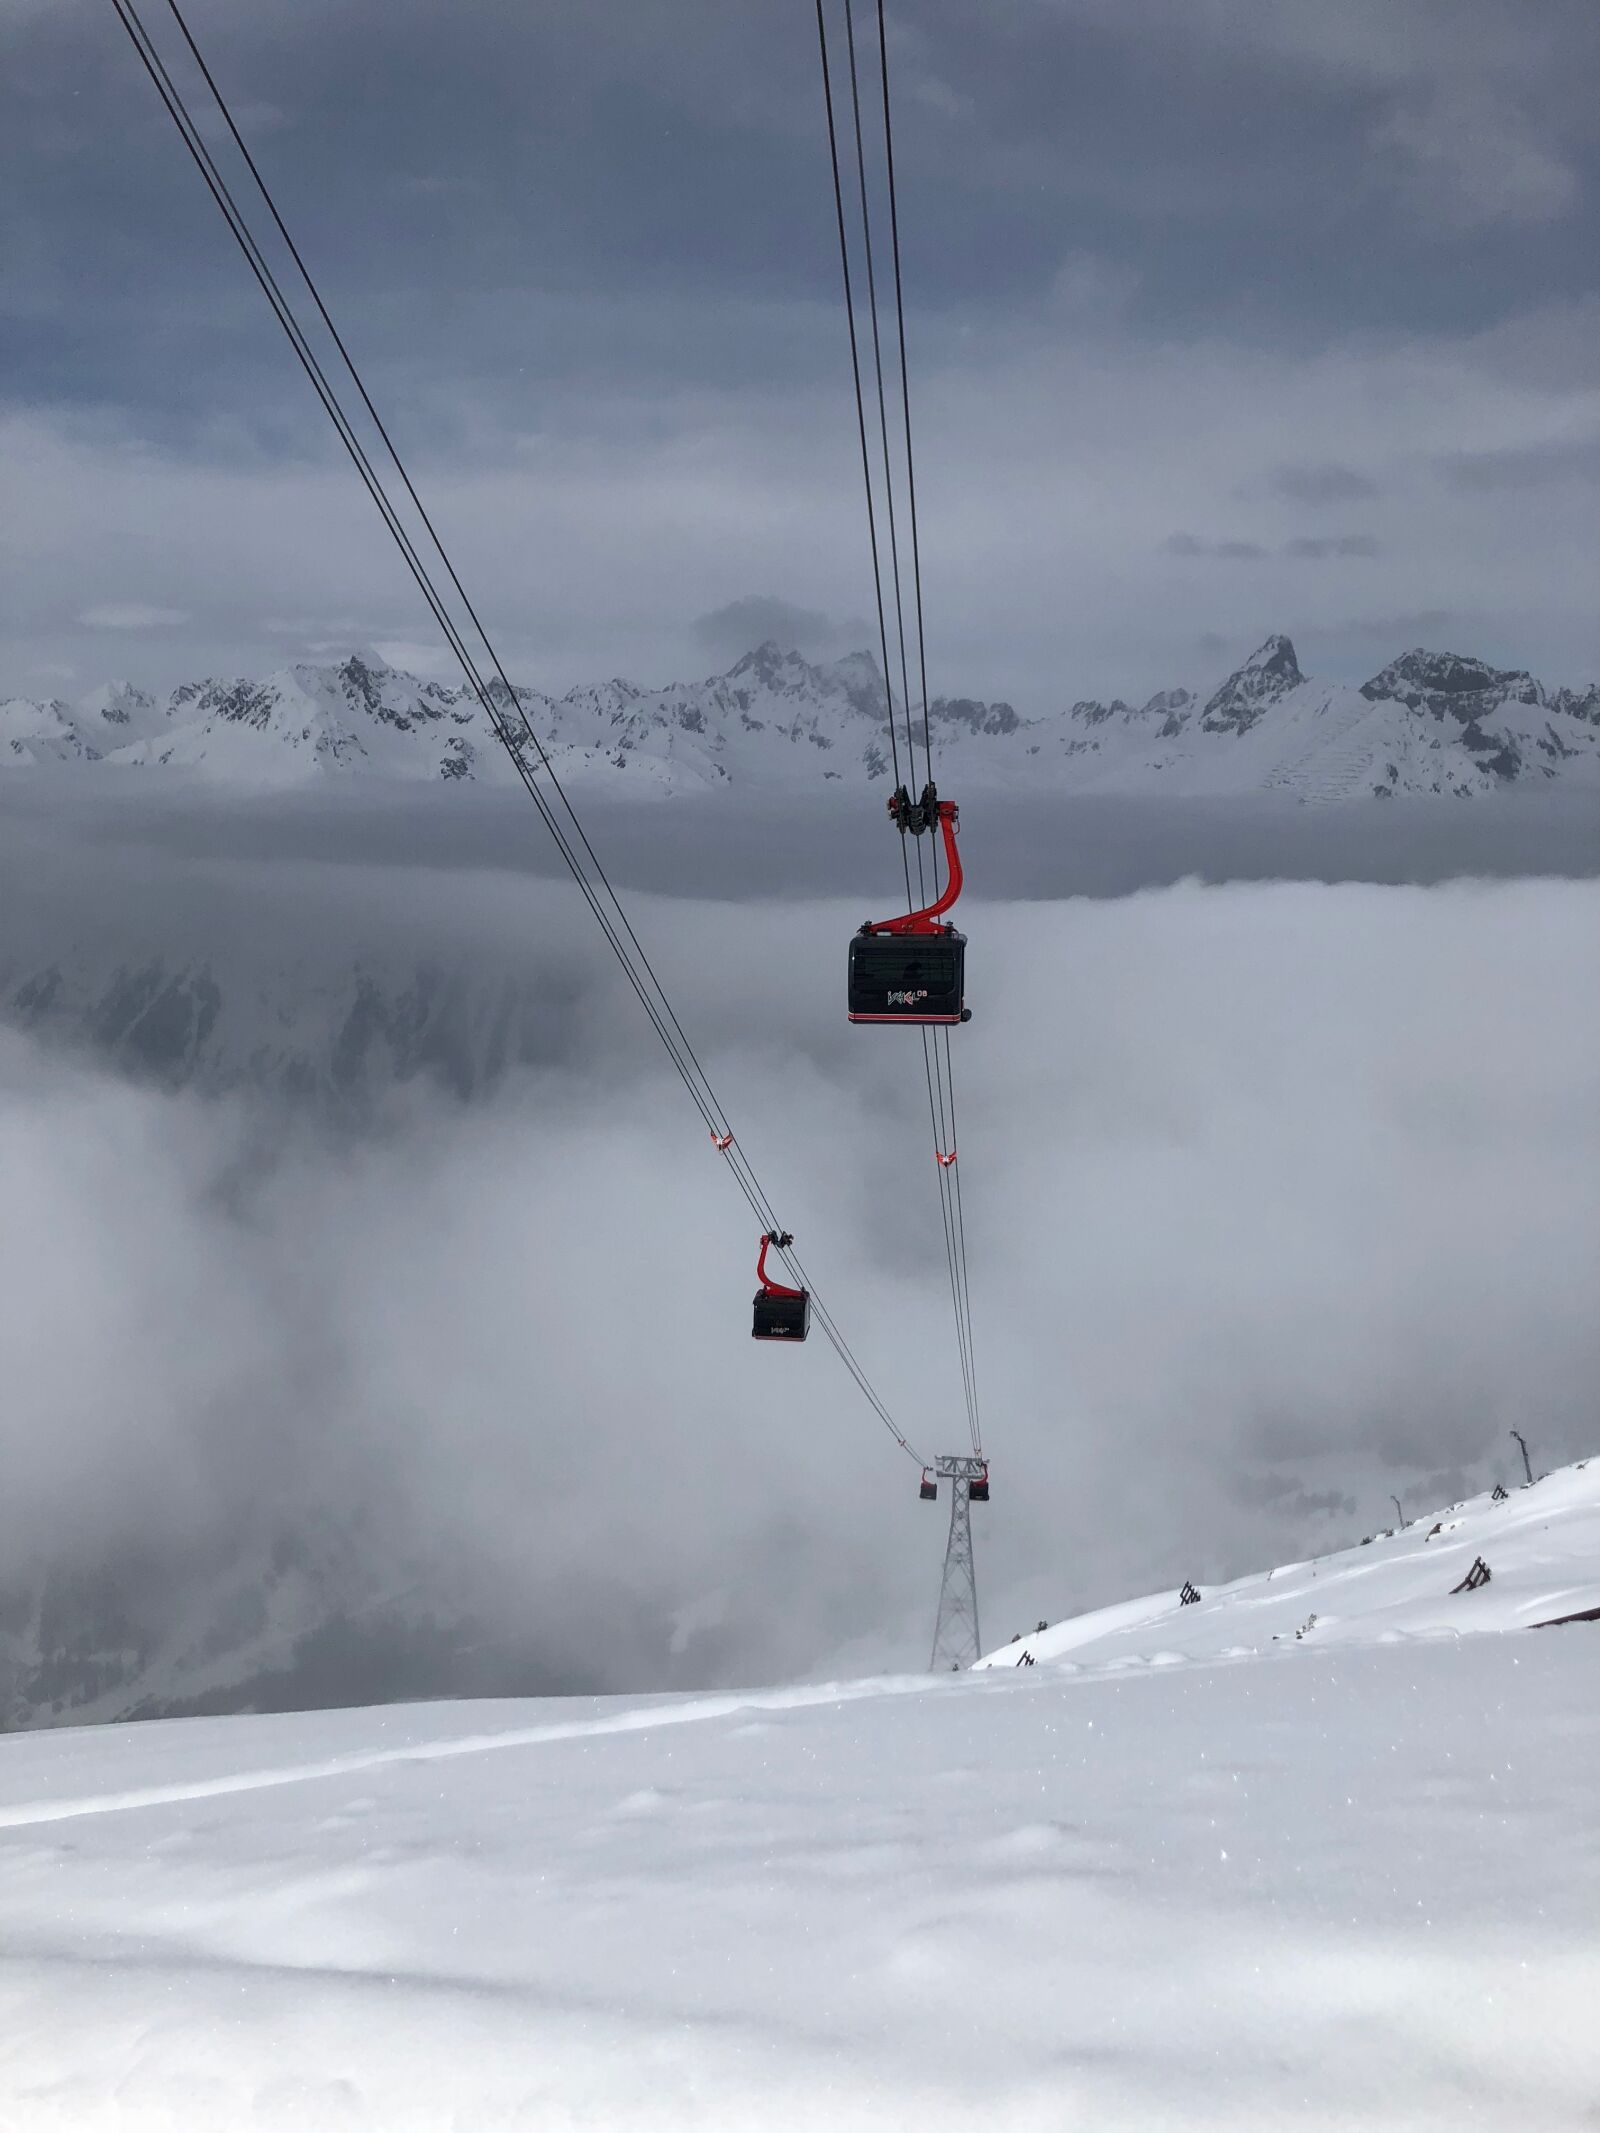 Apple iPhone 8 sample photo. Ski holiday, gondola, mountains photography